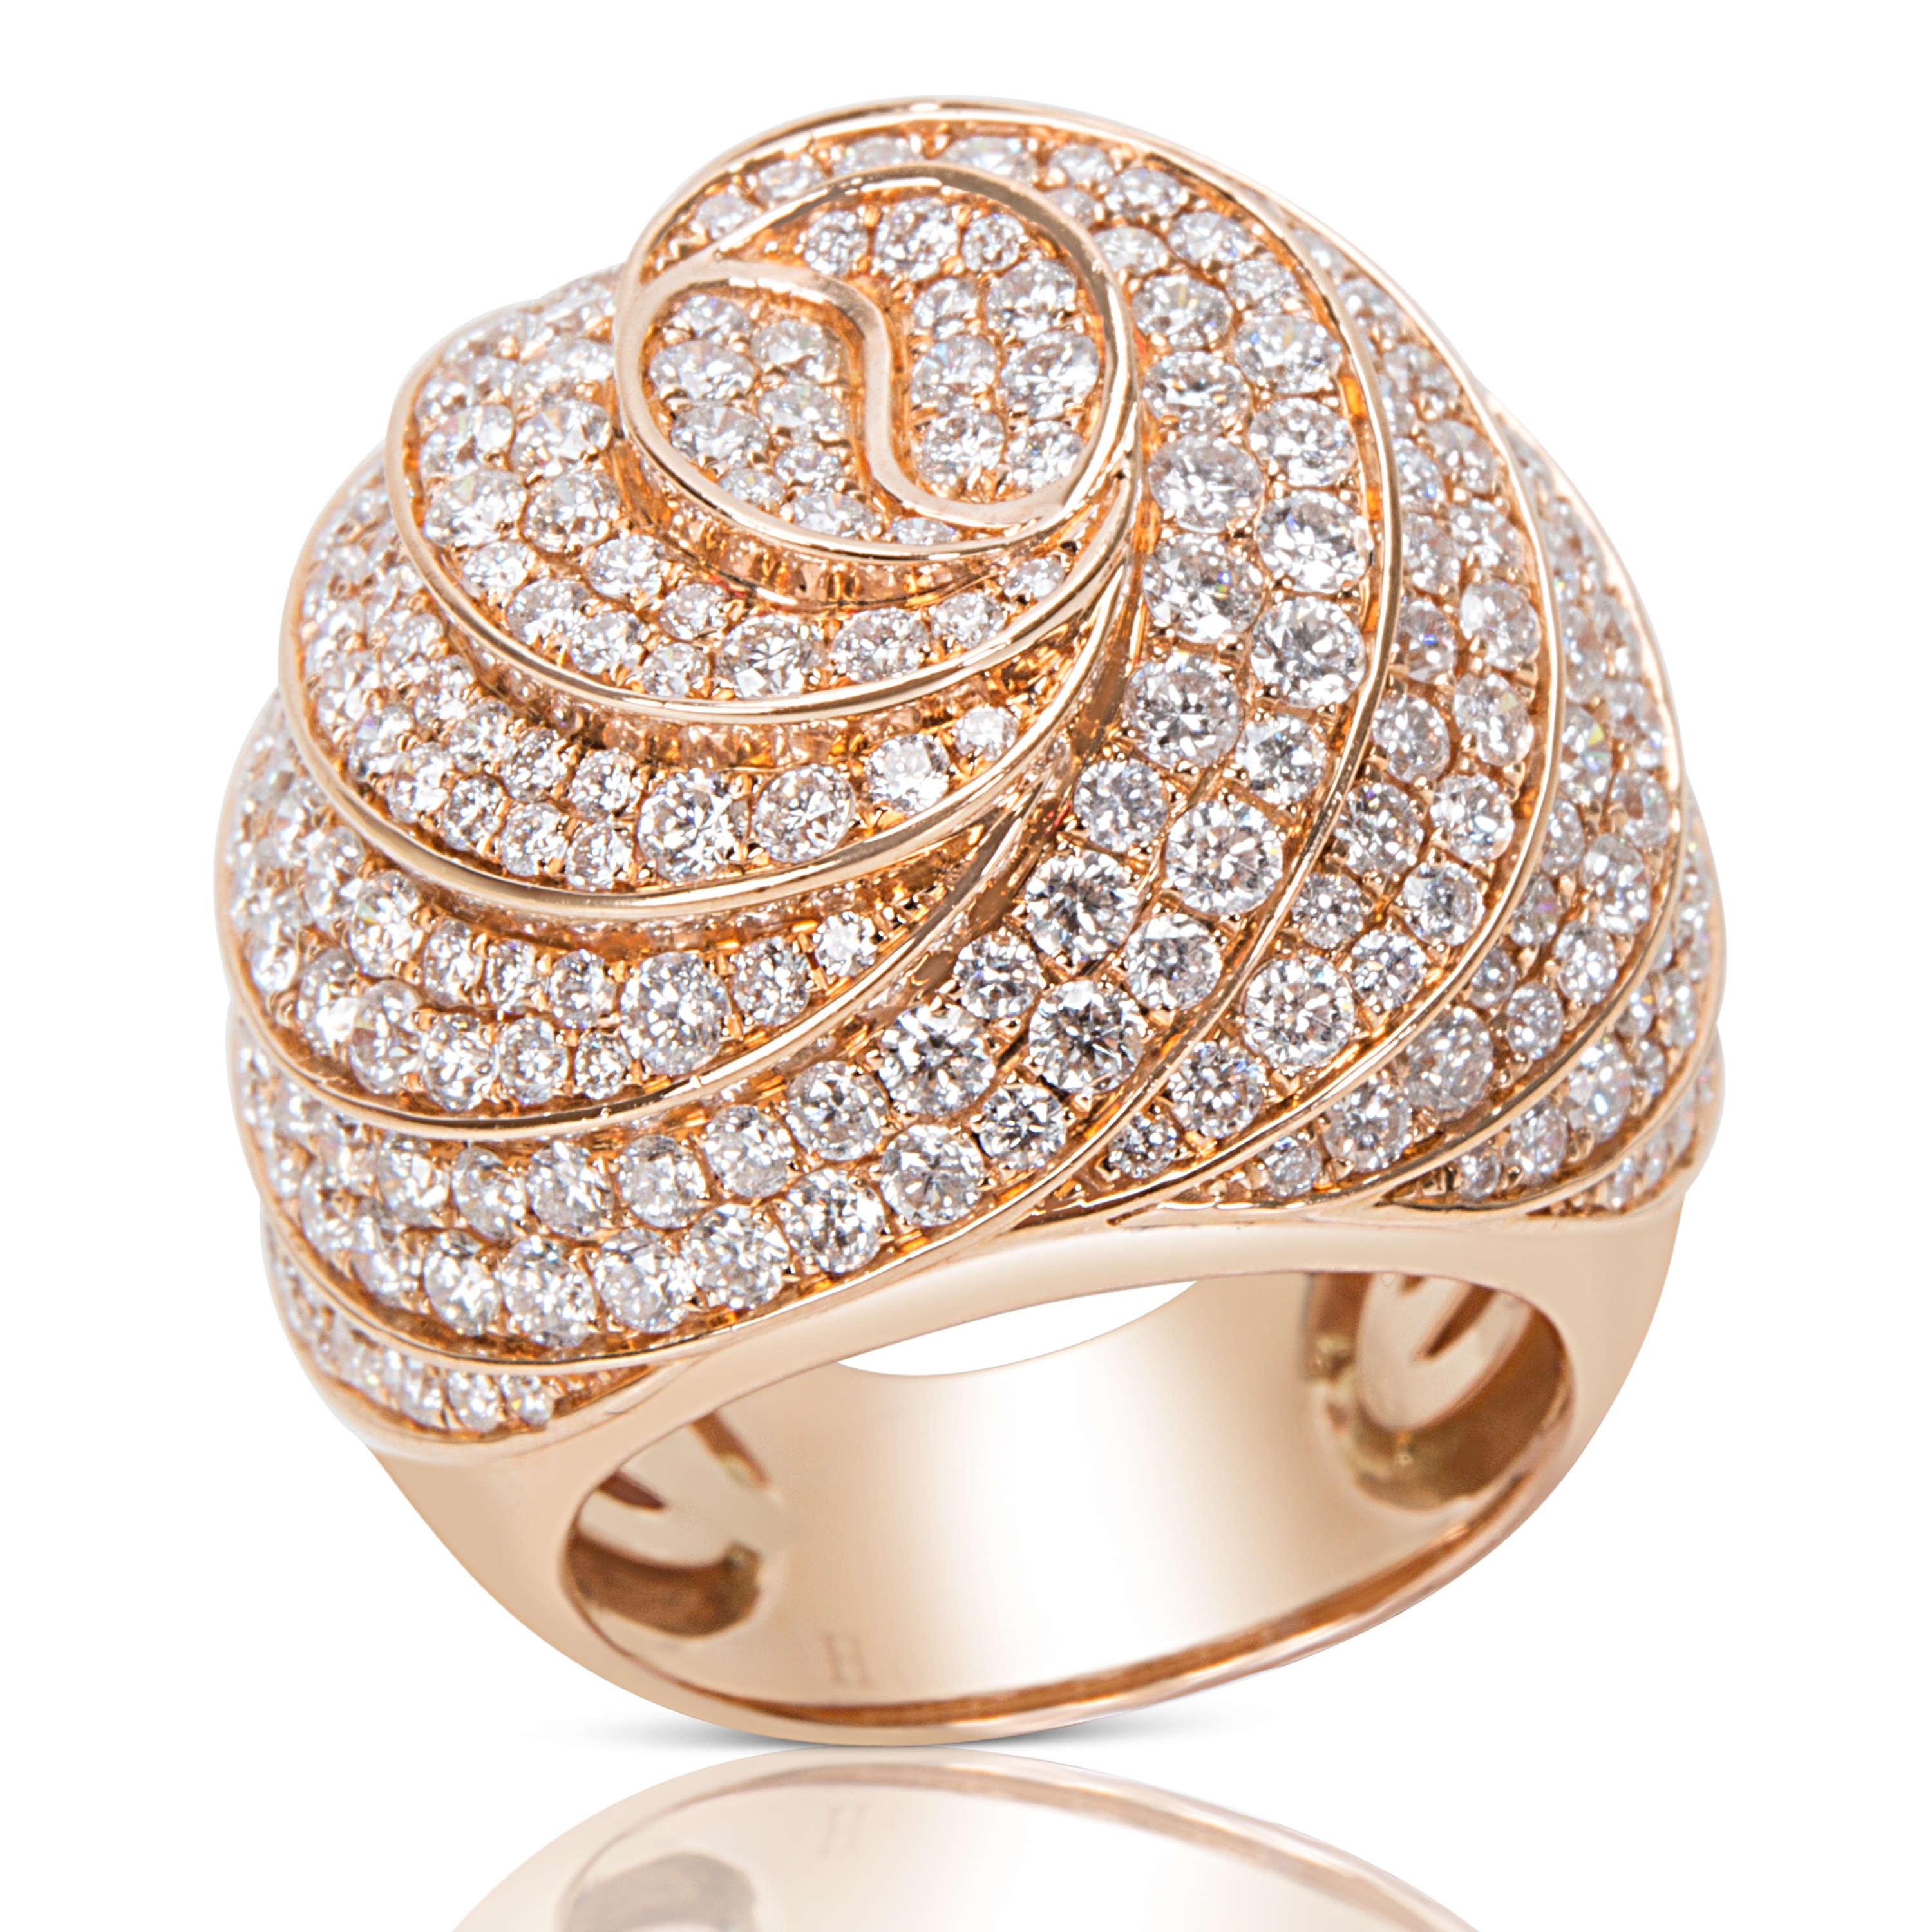 Round Cut Pave Diamond Swirl Ring in 18 Karat Pink Gold 4.61 Carat